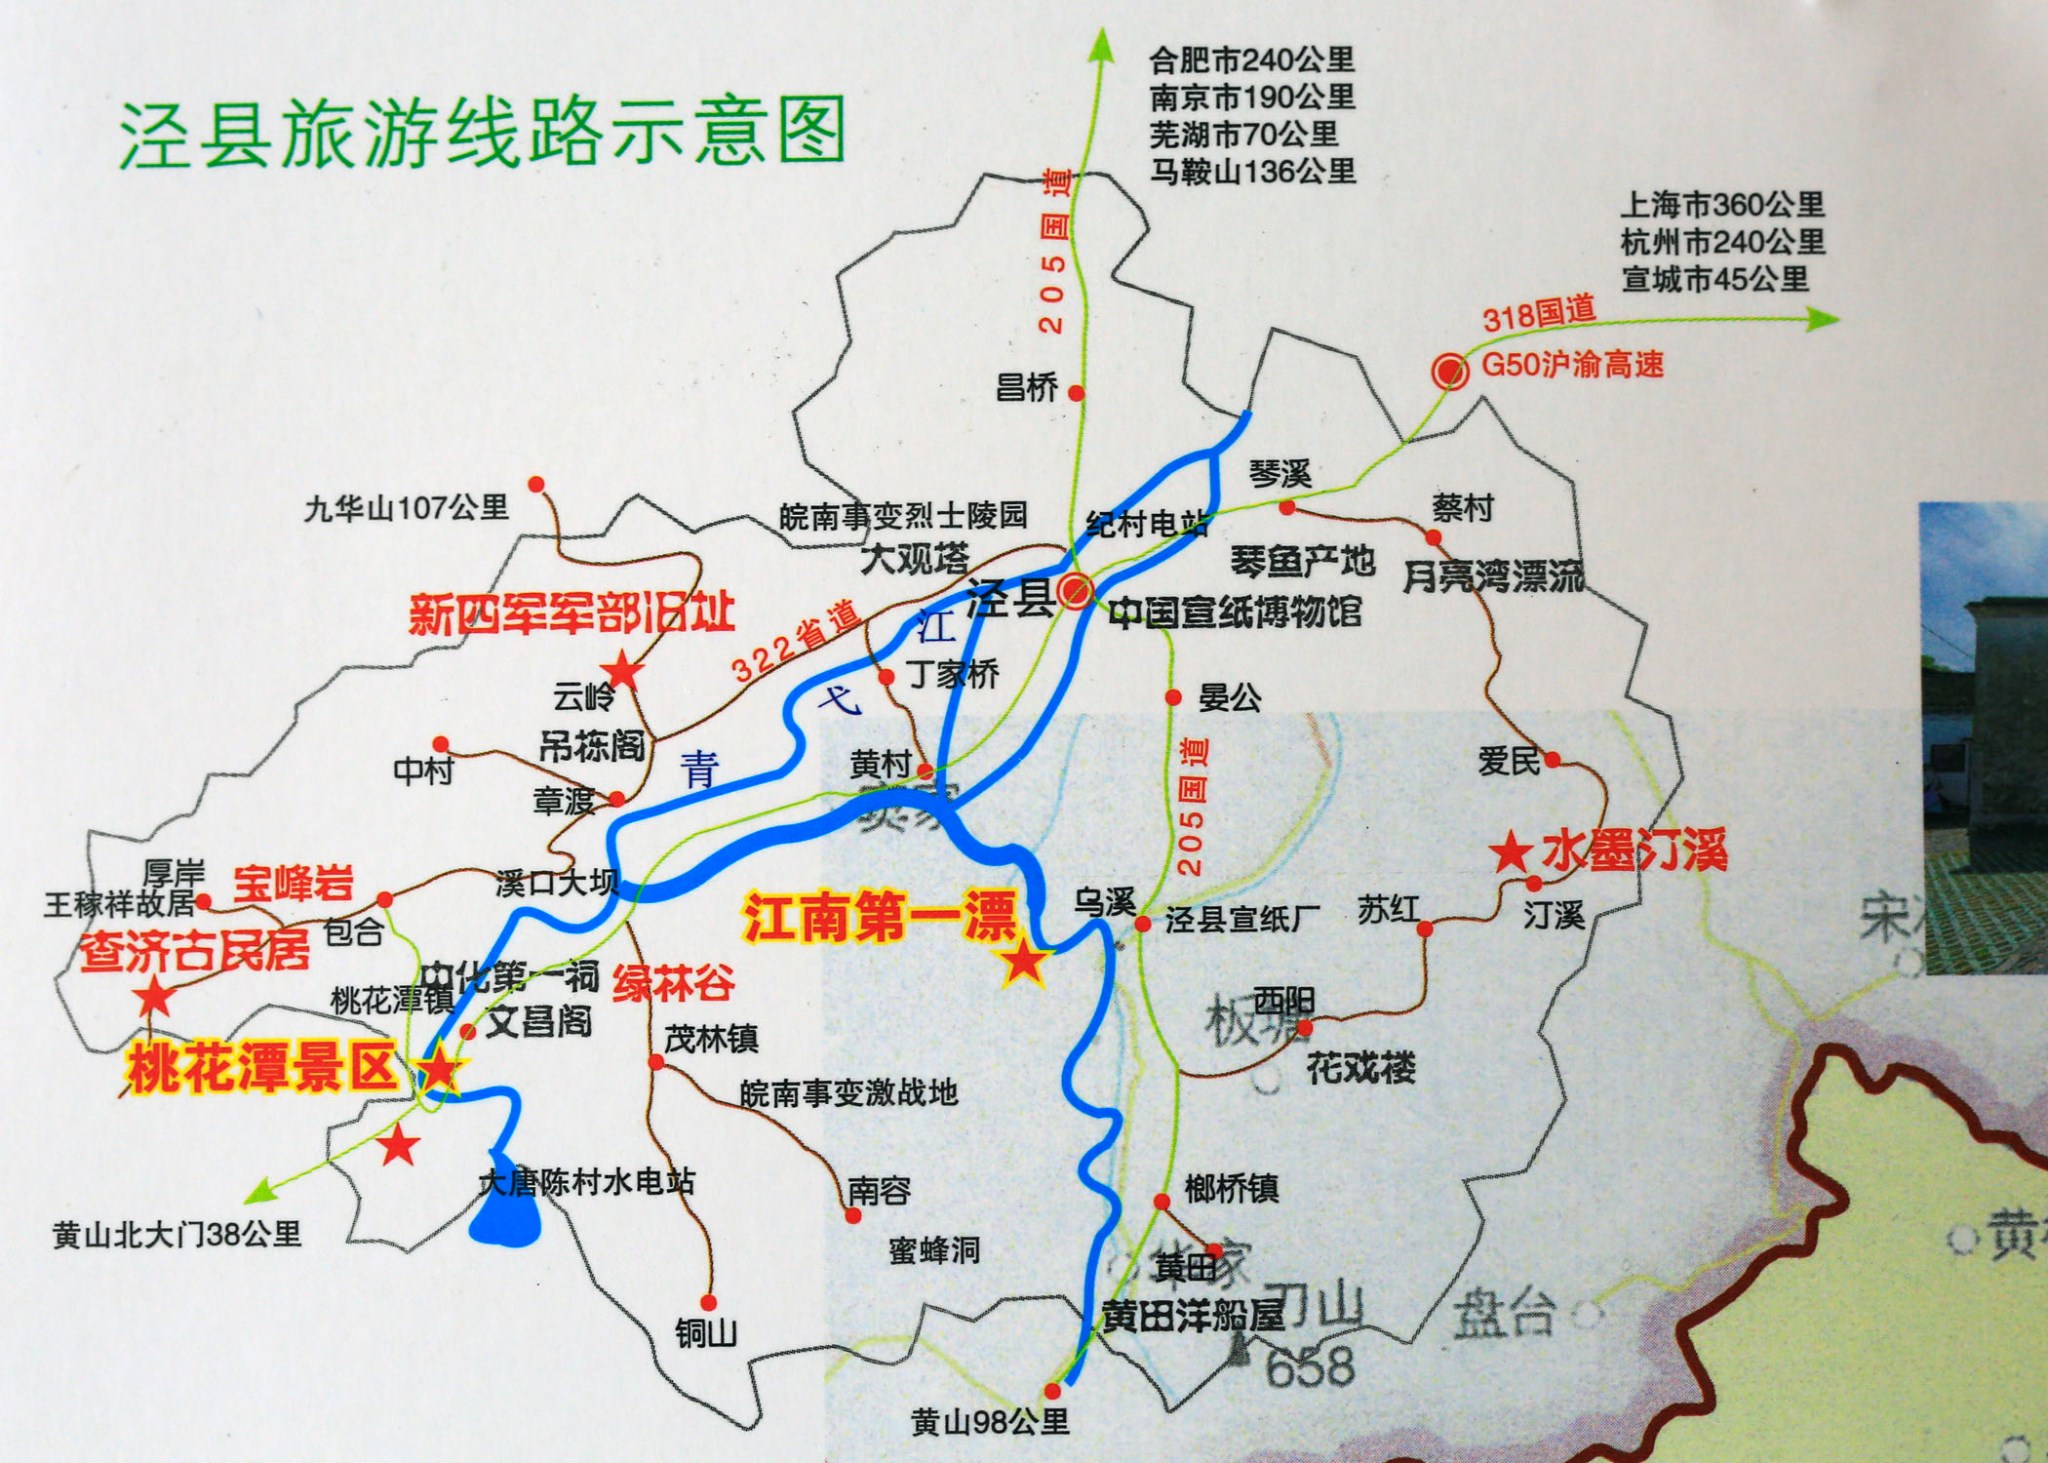 318川藏南线旅游路线地图-川藏南线详细行程线路路书-川藏线包车俱乐部